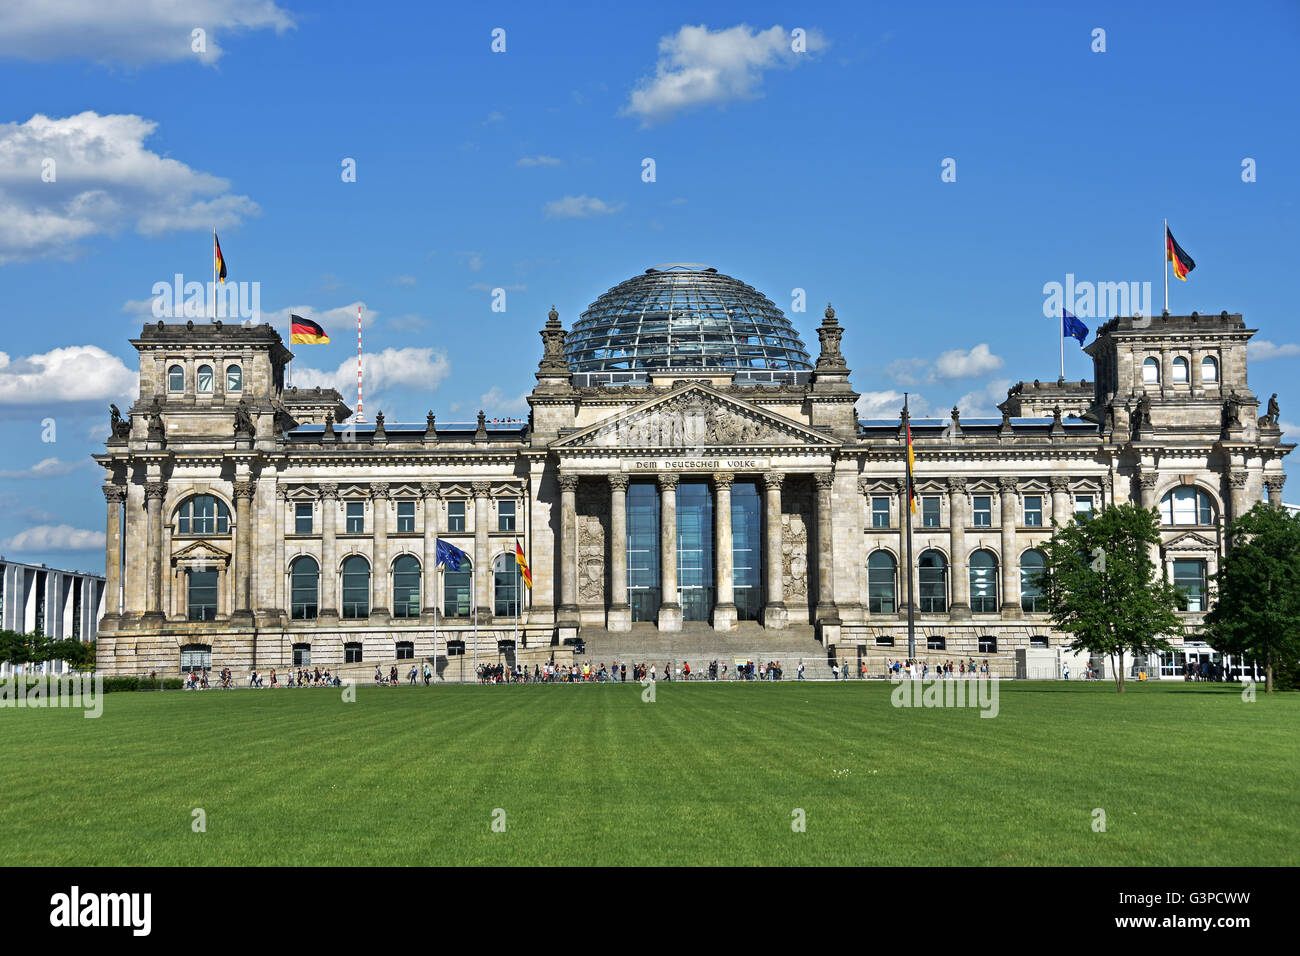 Reichstag, Reichstagsgebäude, Berlin qui abrite le Bundestag, la chambre basse du Parlement allemand, construit en 1894. Allemagne Banque D'Images